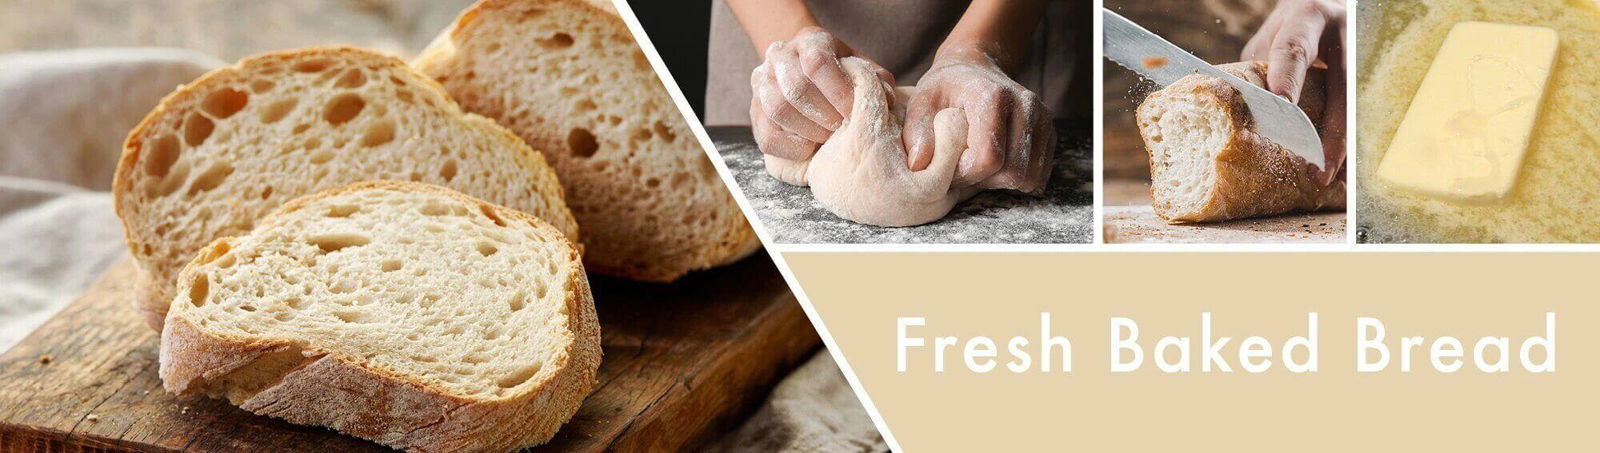 Fresh Baked Bread 59g